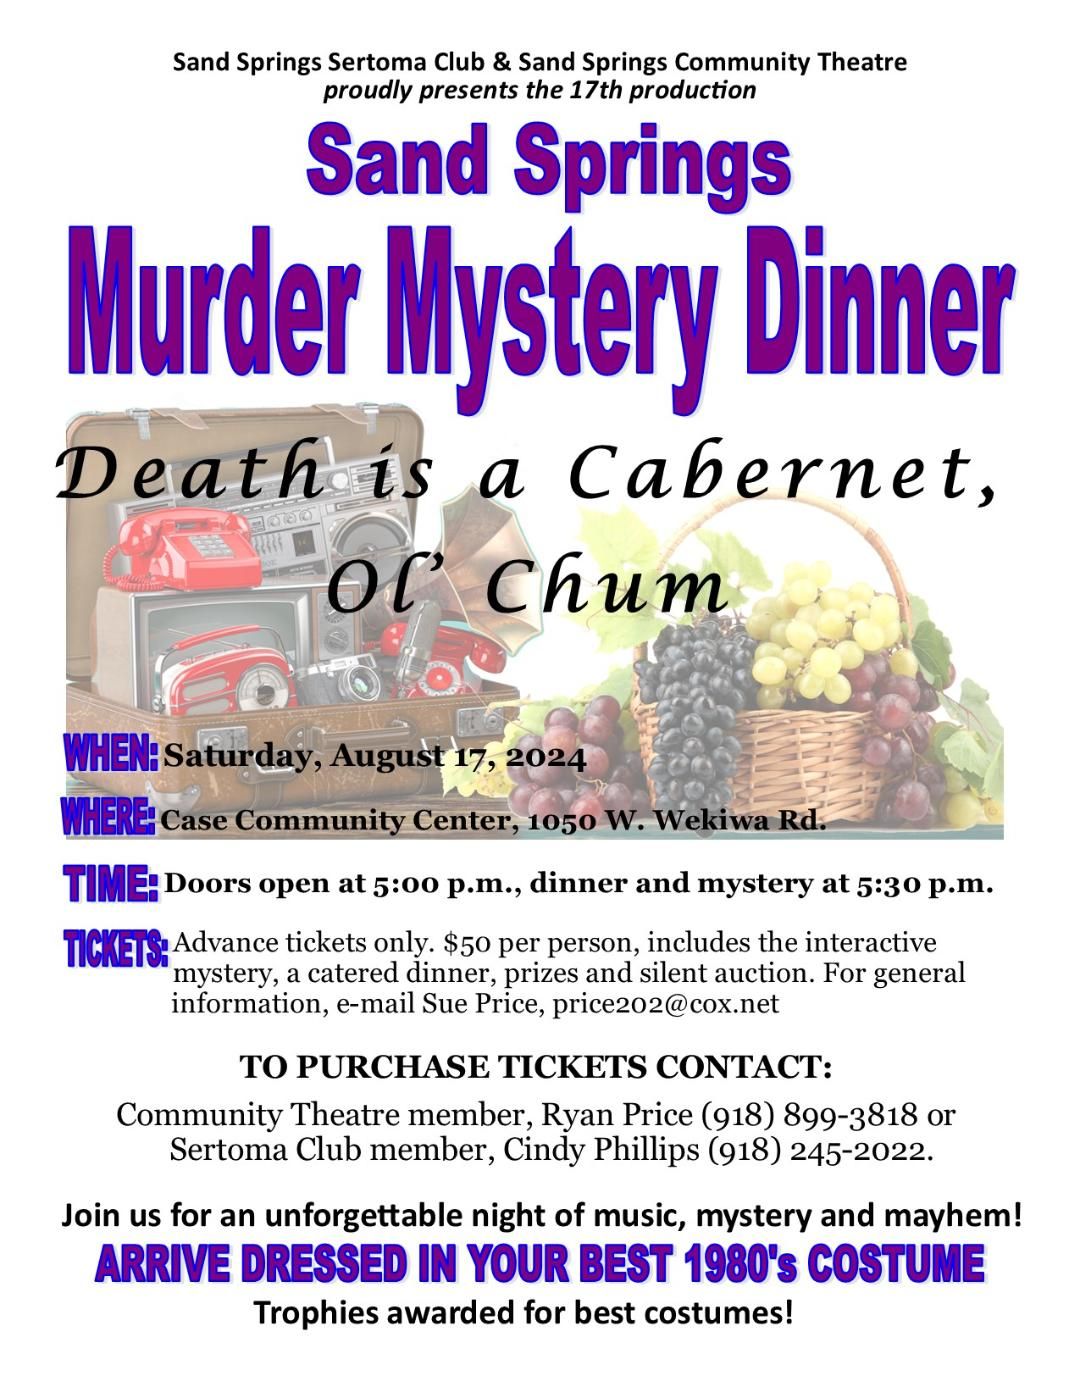 Sand Springs Murder Mystery Dinner:  Death is a Cabernet, Ol Chum